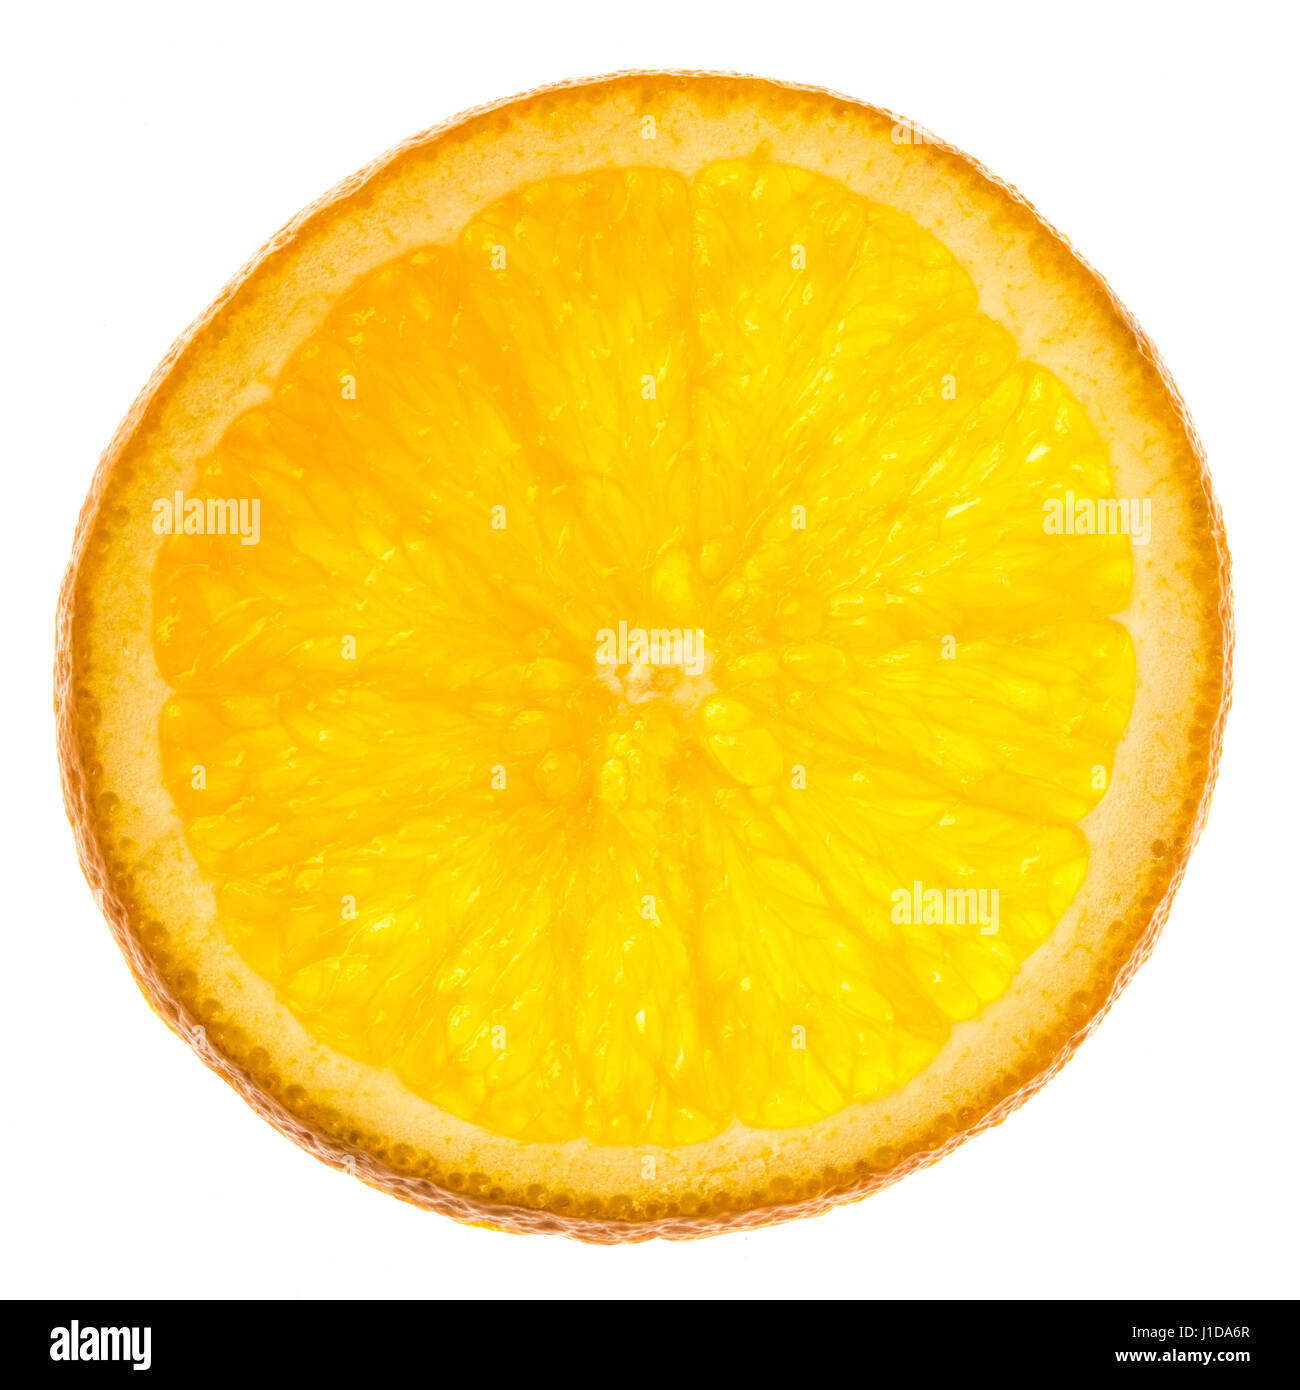 Single slice of orange fruit on white background. Stock Photo